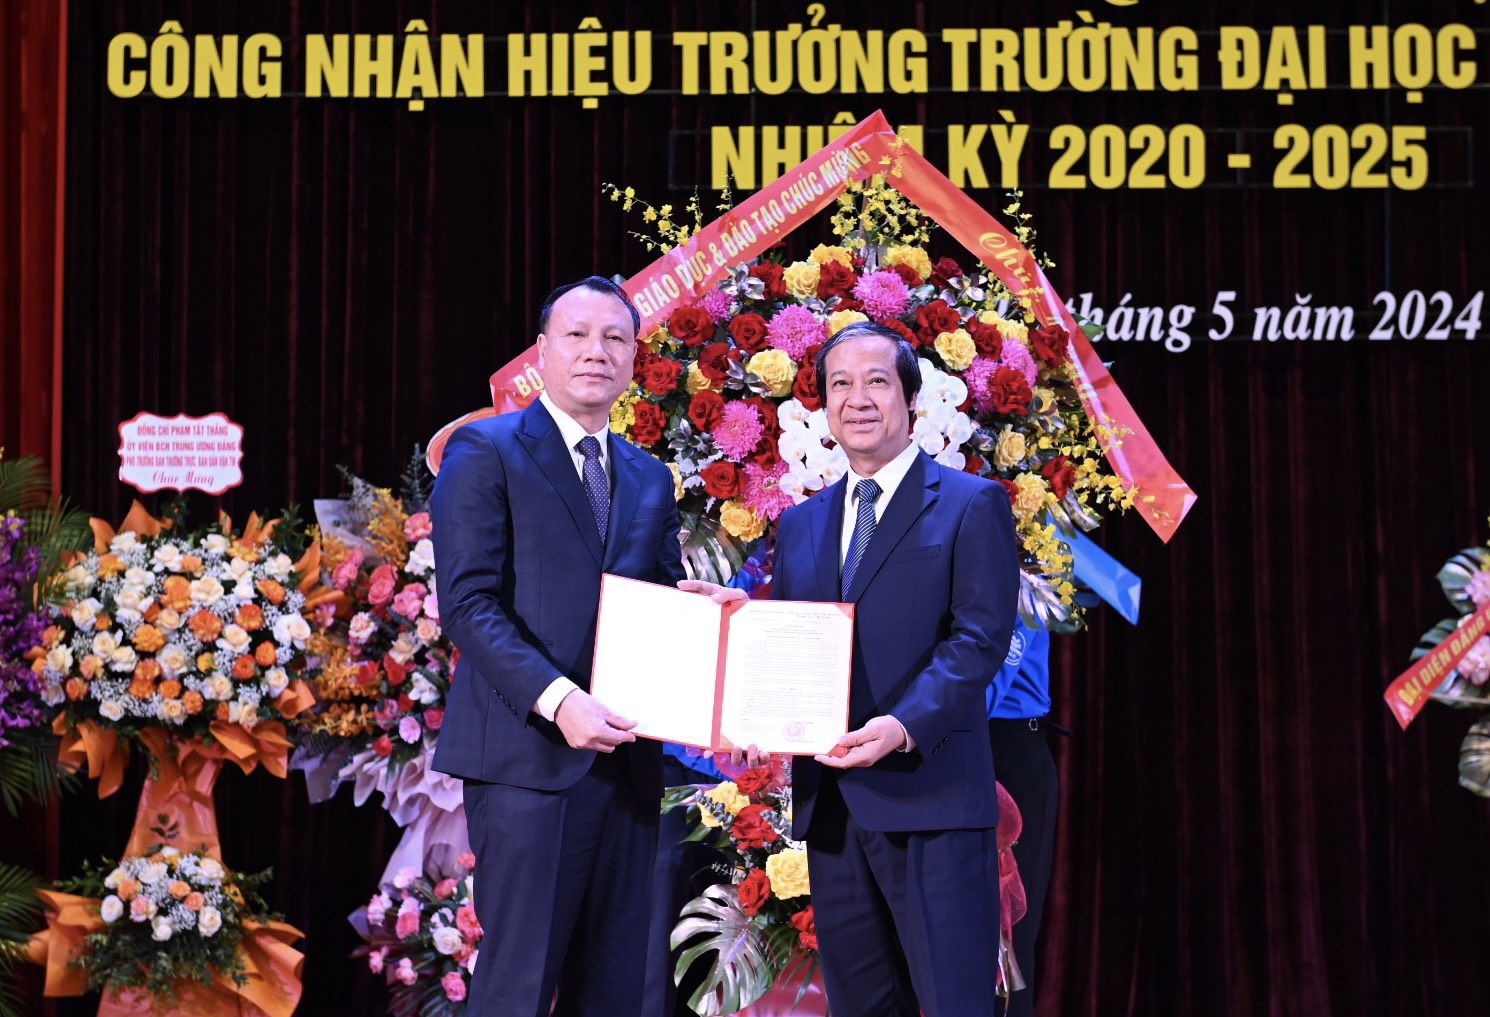 Bộ trưởng Nguyễn Kim Sơn trao Quyết định công nhận Hiệu trưởng Trường ĐH Sư phạm Hà Nội cho PGS.TS. Nguyễn Đức Sơn.